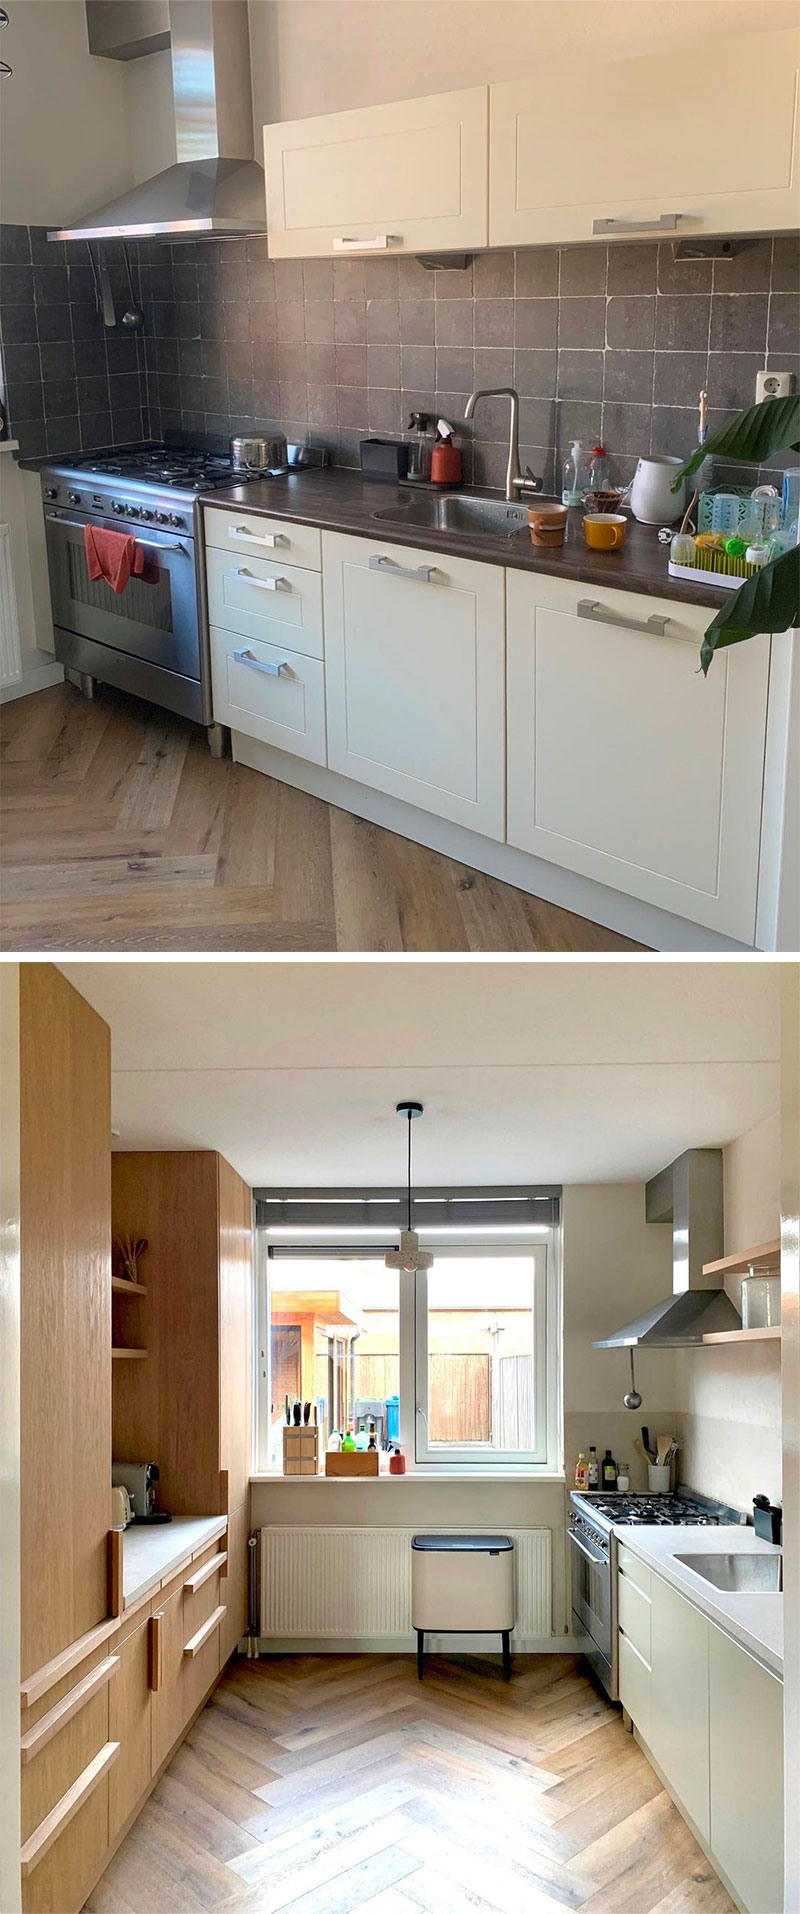 Voor en na situatie van een keuken project - Nieuwe keukenfrontjes via K14.nl